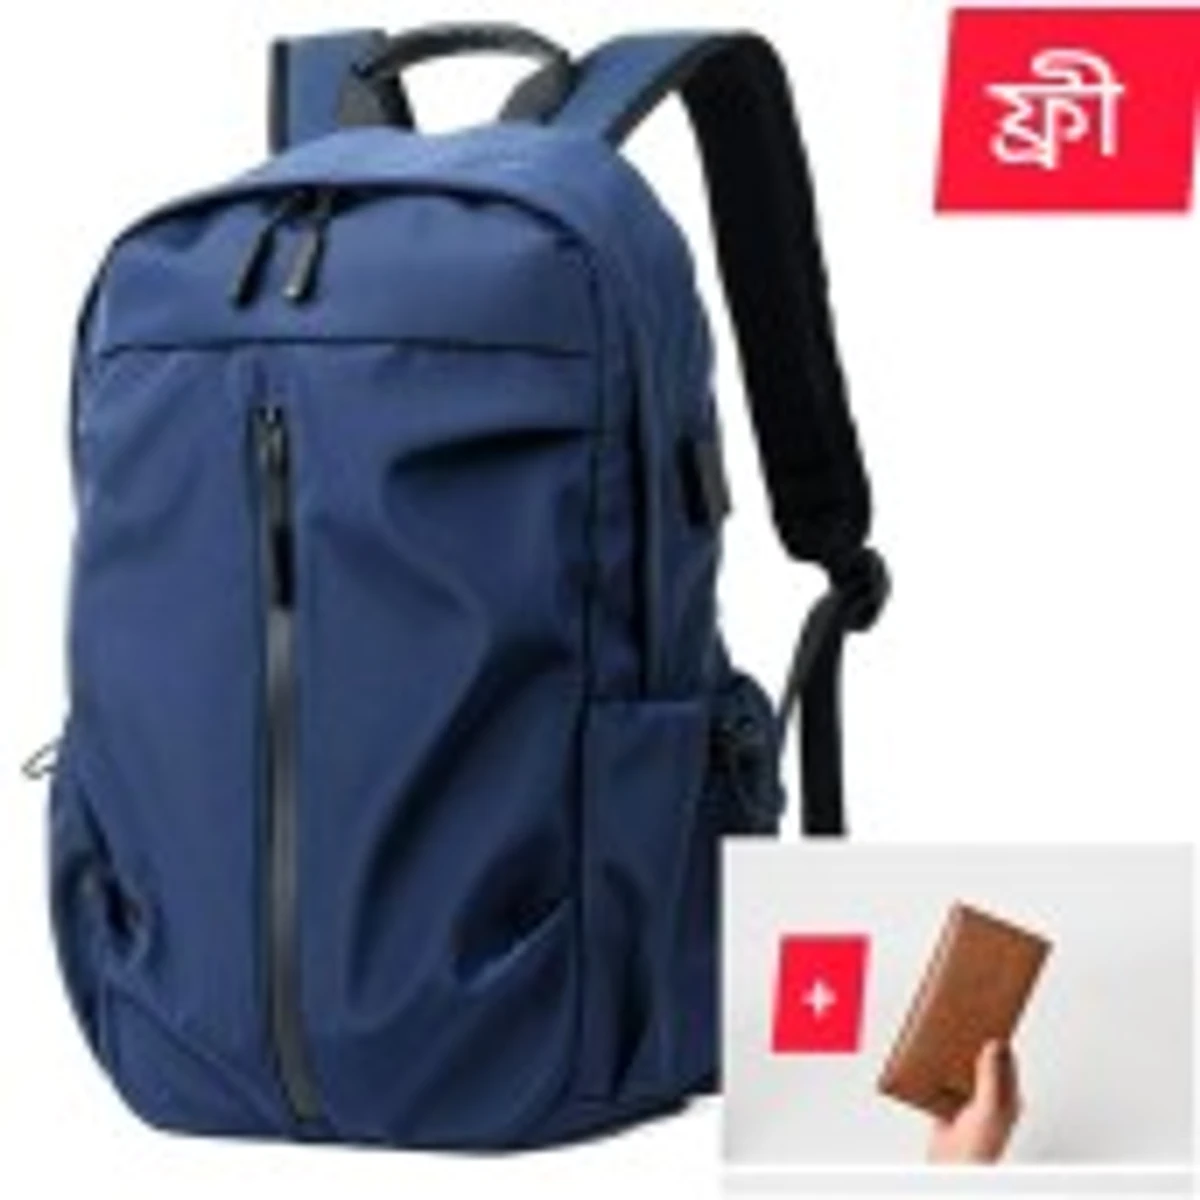 Waterproof Multi-Functional Laptop Backpack ( blue color )